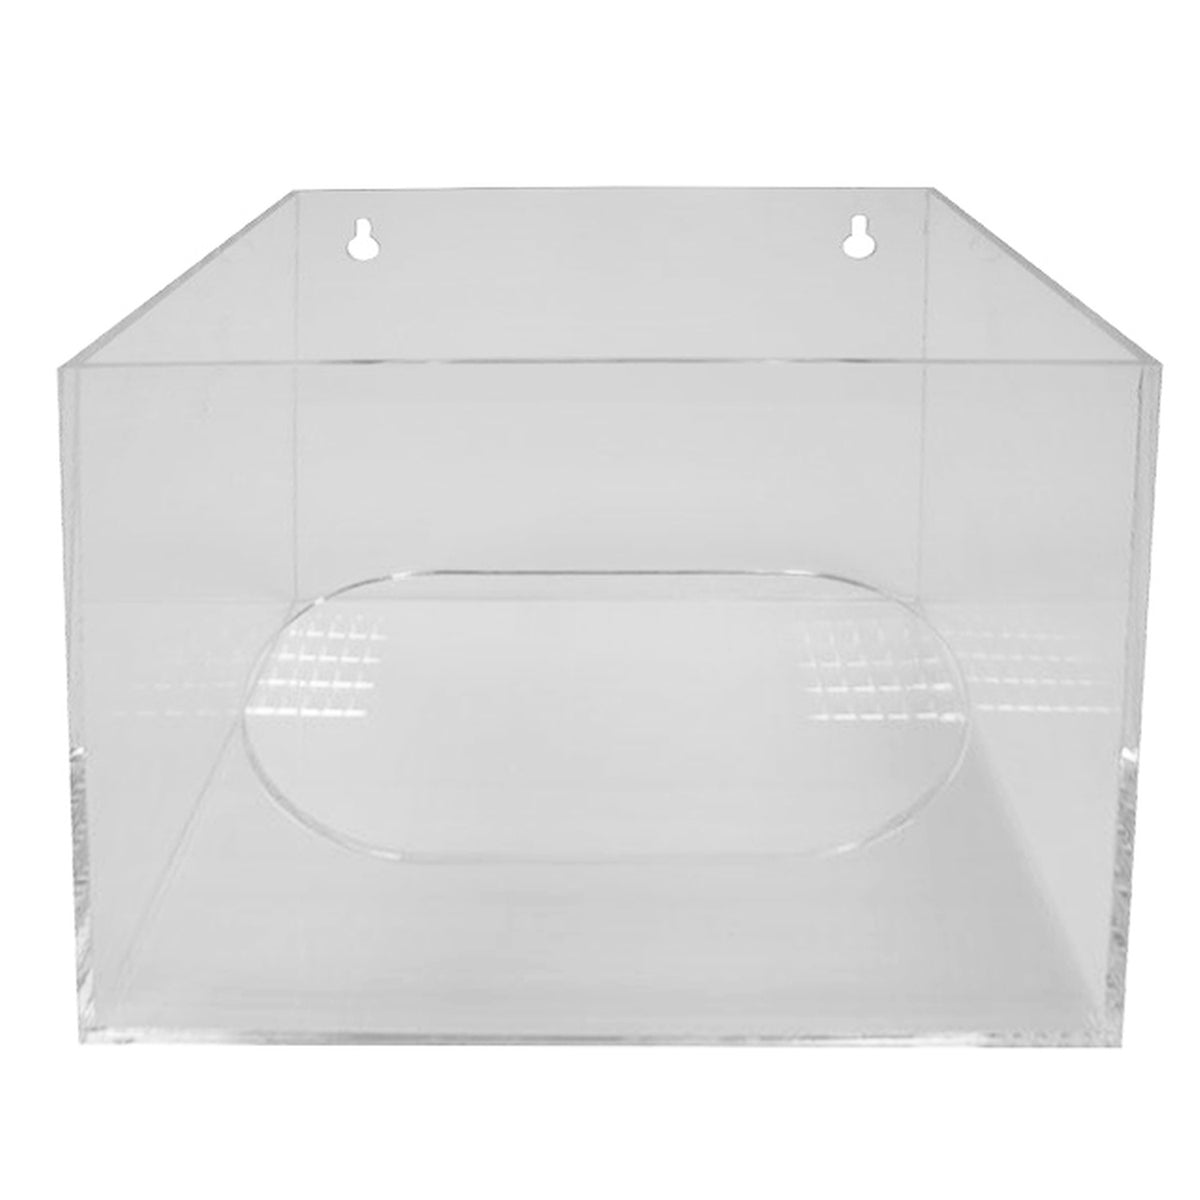 Universal-Spenderbox aus Acrylglas | mit ovalem Eingriffsloch